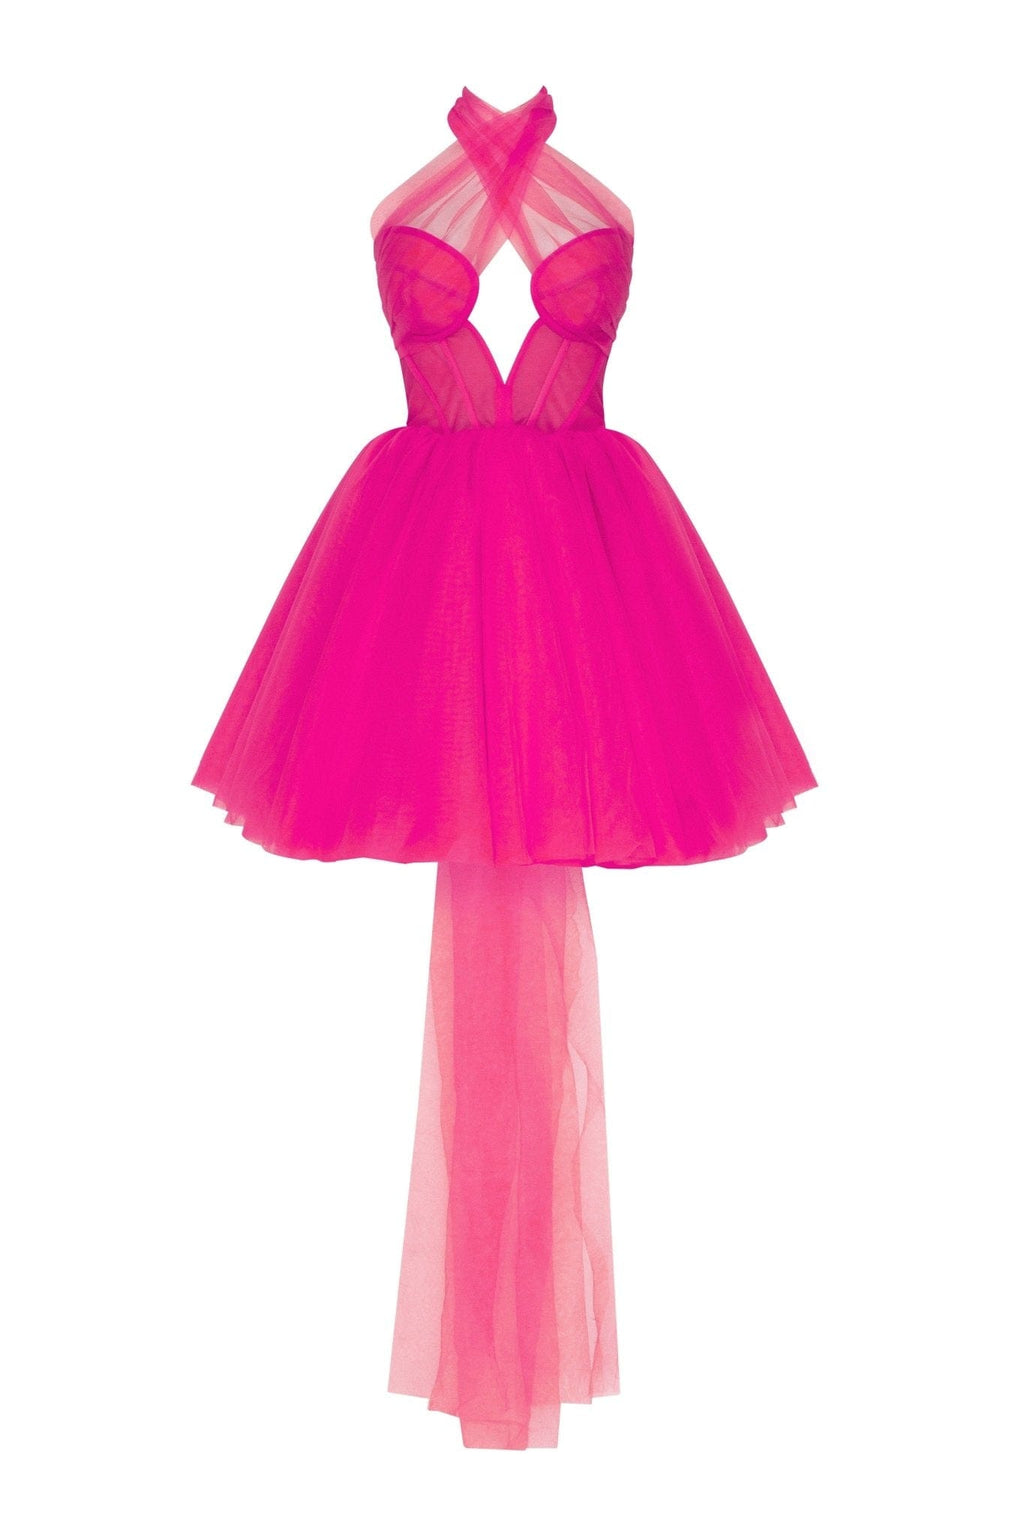 Vibrant pink mini dress - Milla